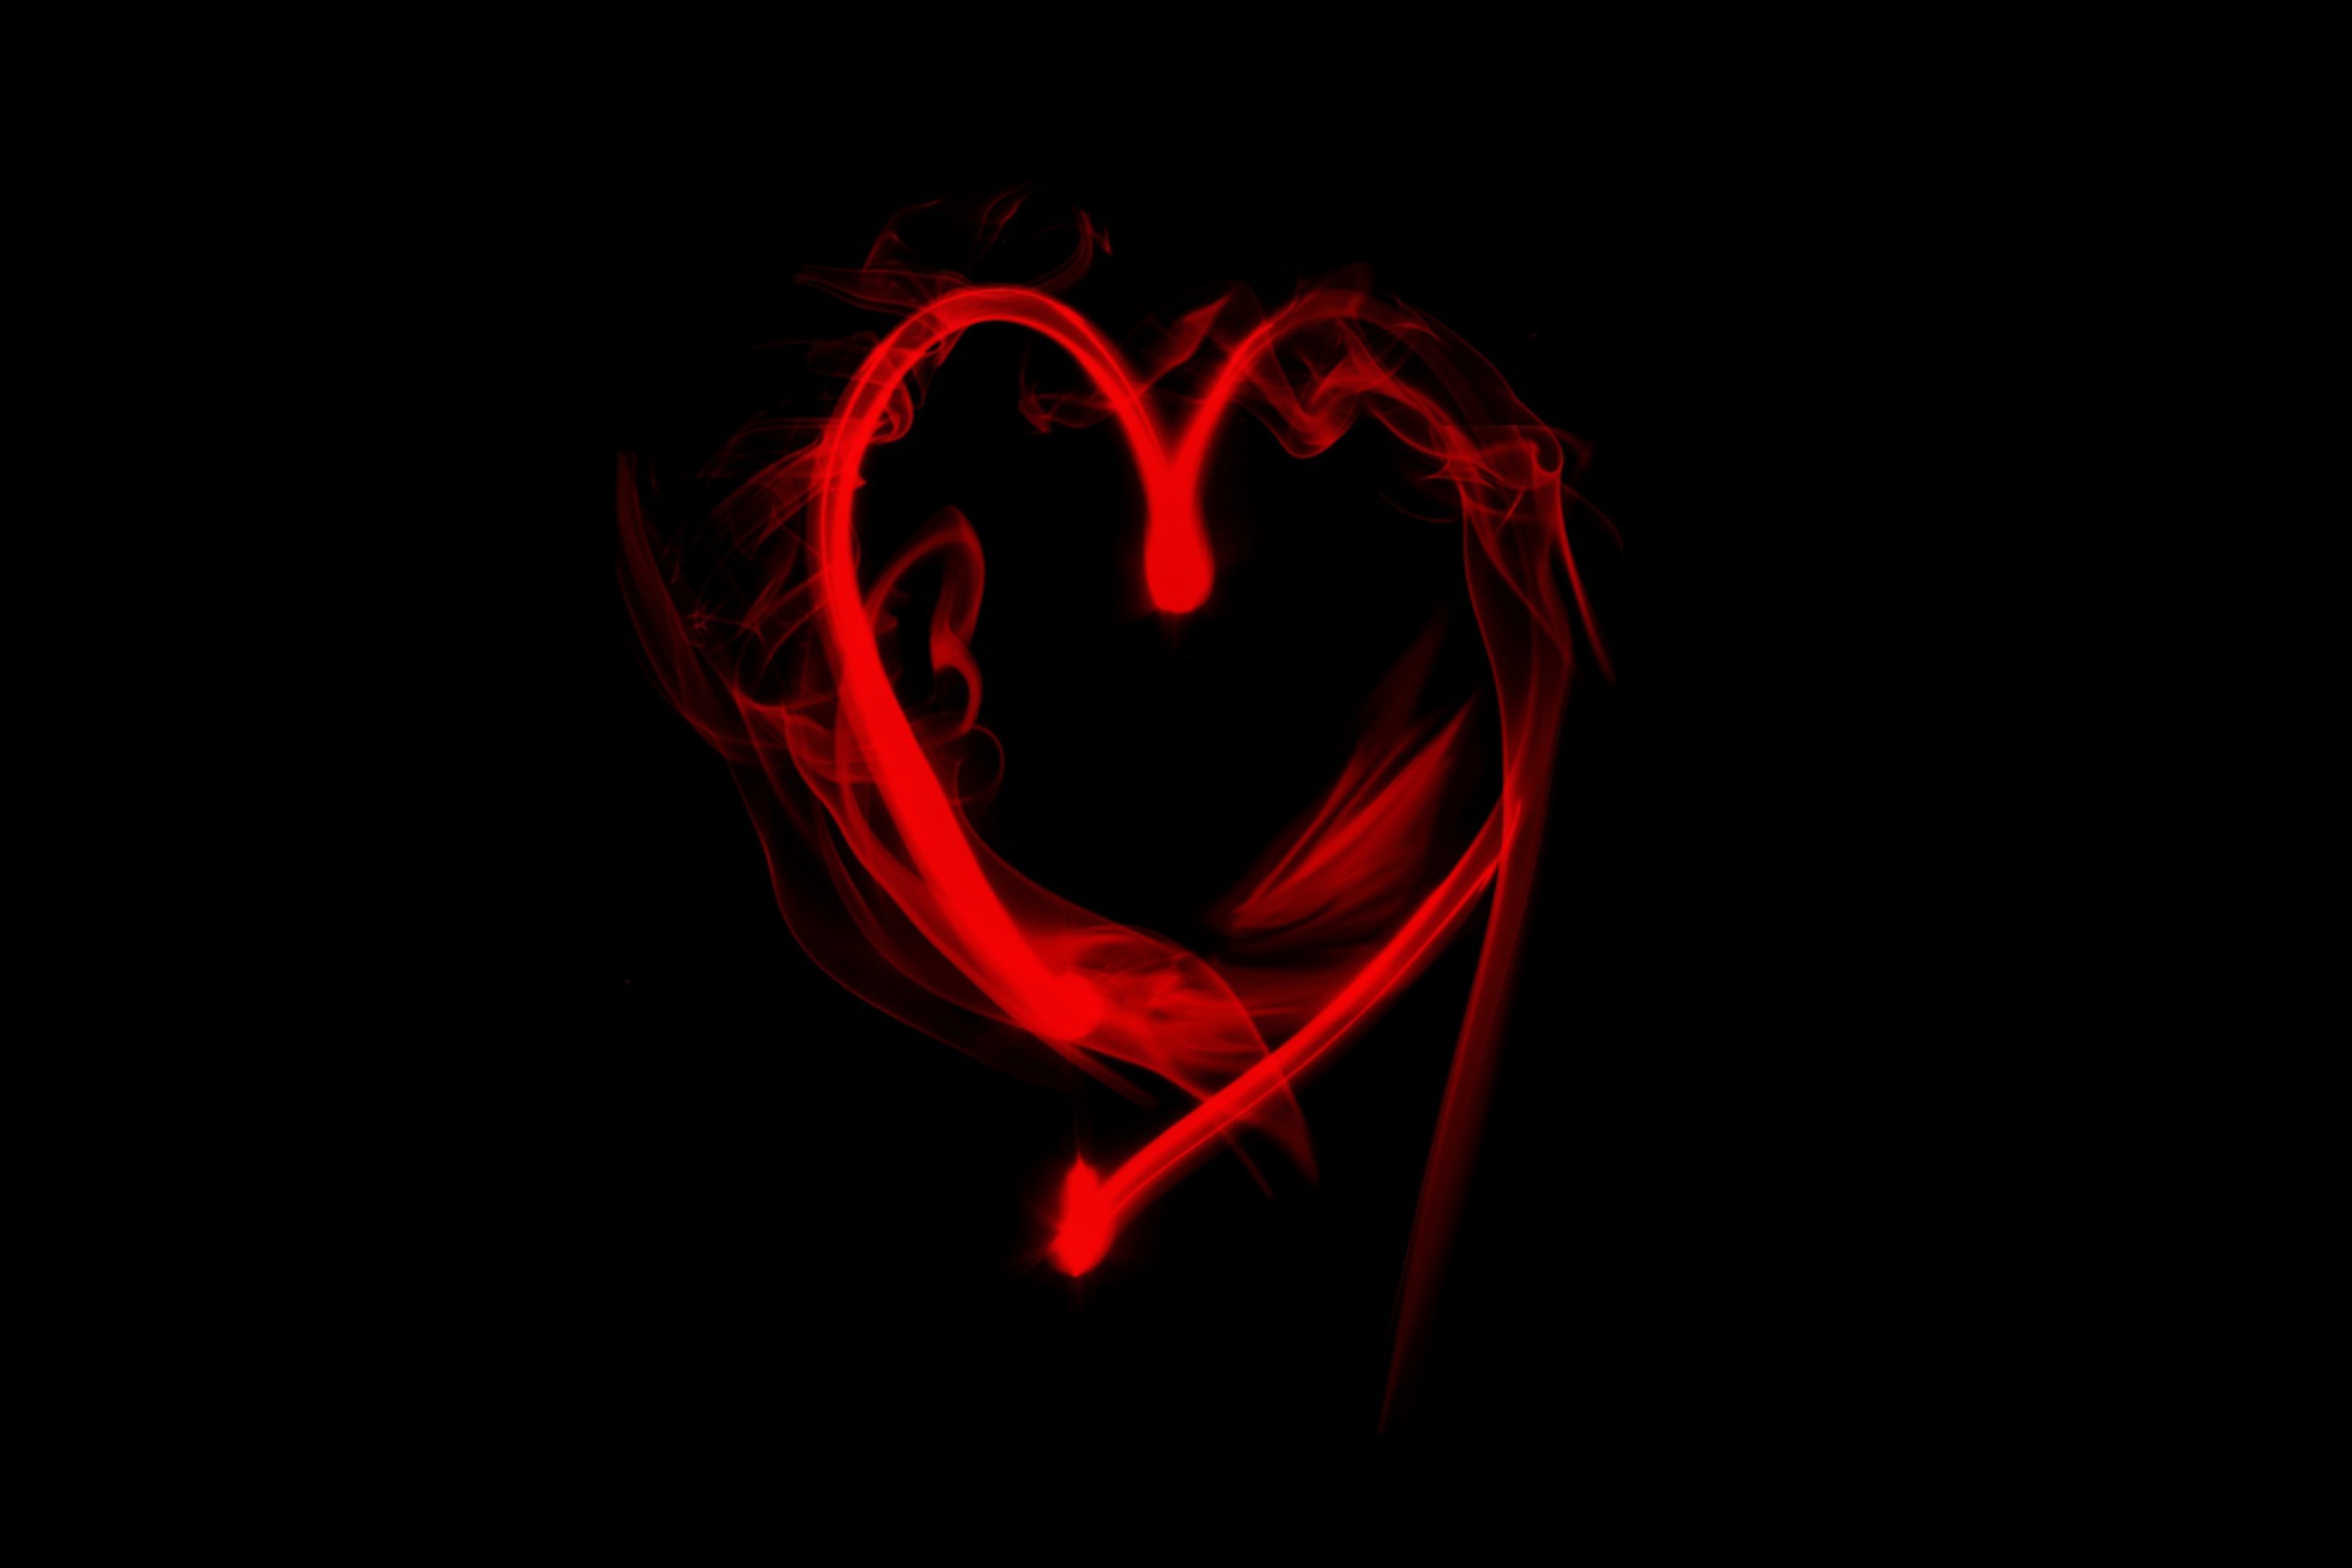 Das Flaming Heart Wallpaper 2880x1920